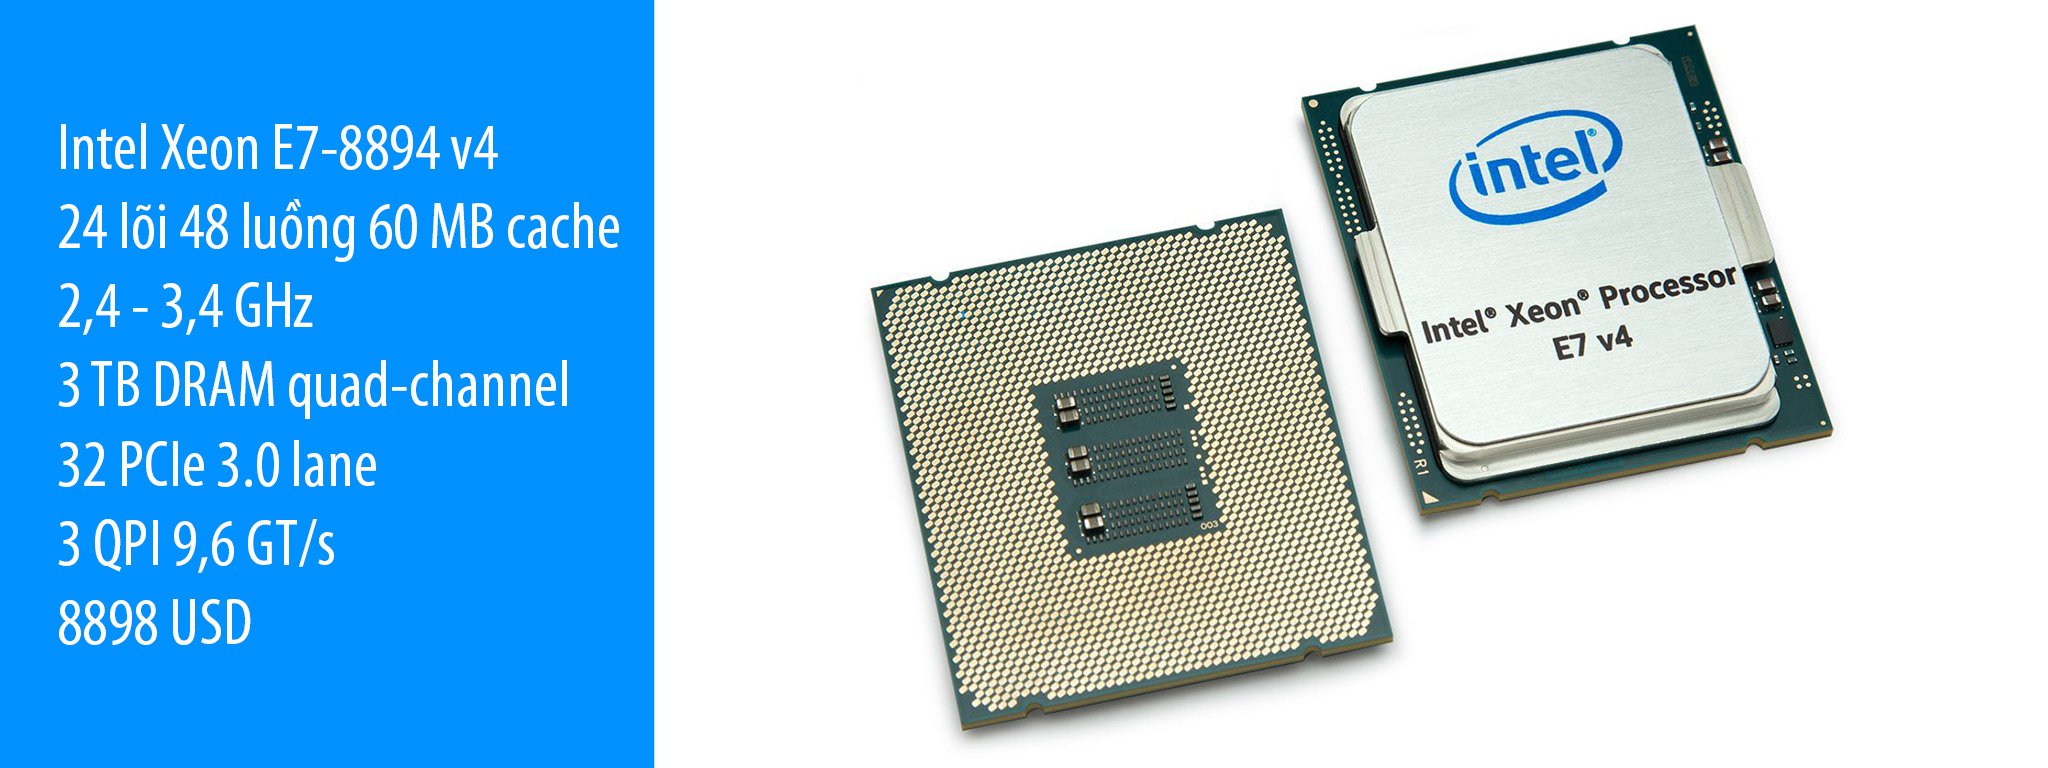 Intel ra mắt E7-8894 v4 mạnh nhất dòng Xeon, giá bán trên 200 triệu đồng